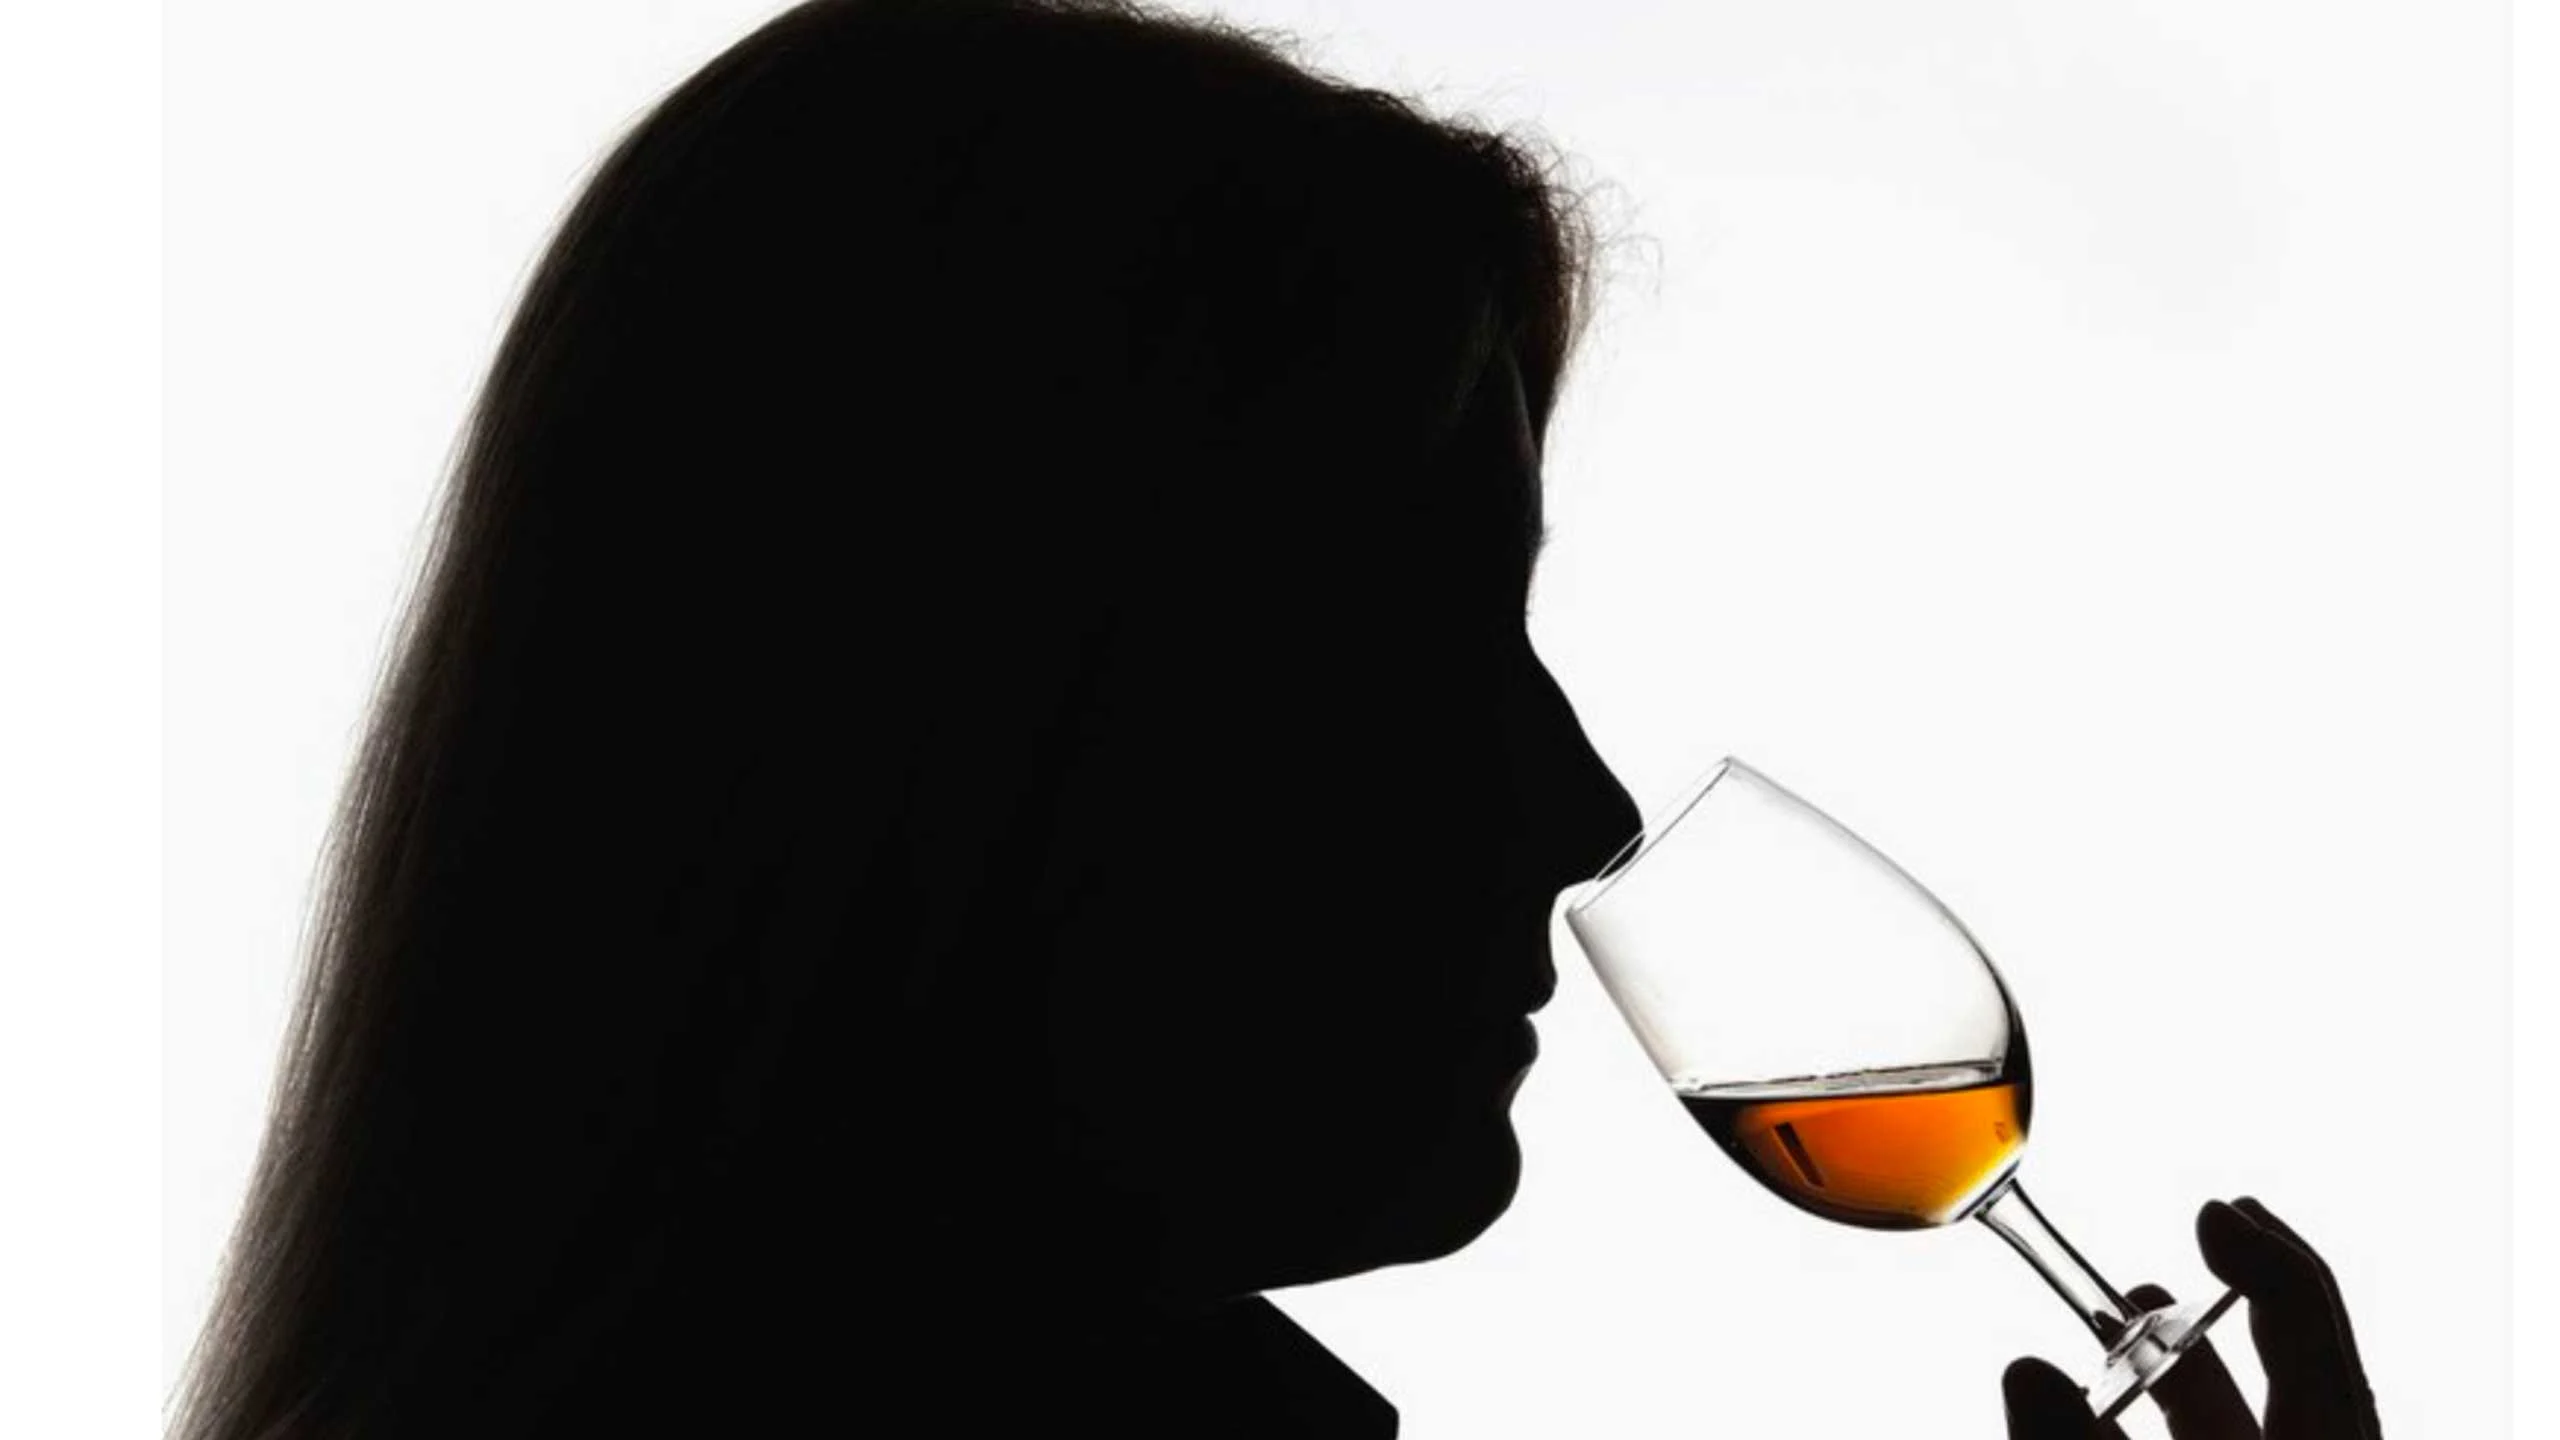 Fraude de $52 millones de dólares por un whisky falso